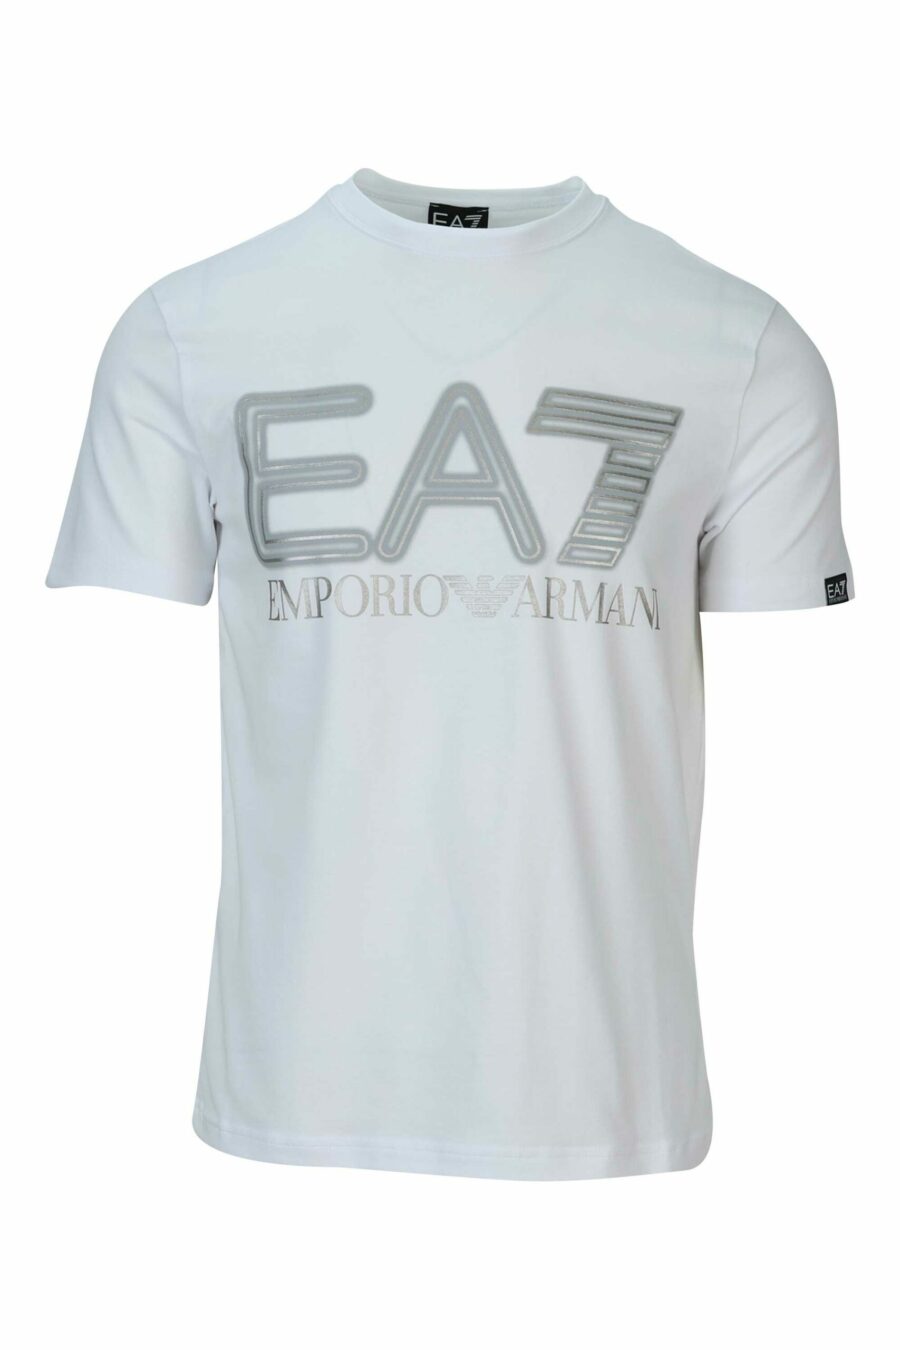 Weißes T-Shirt mit neon-silbernem "lux identity" Maxilogo - 8057970672319 skaliert